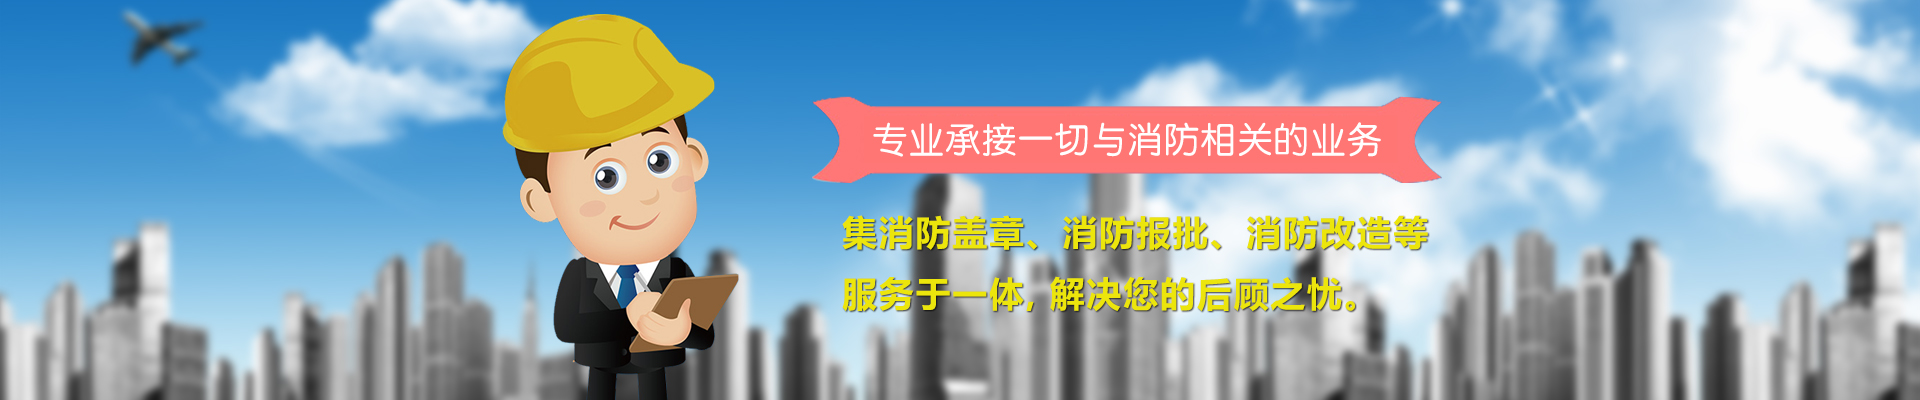 北京通州商场消防施工许可办理速度快价格优